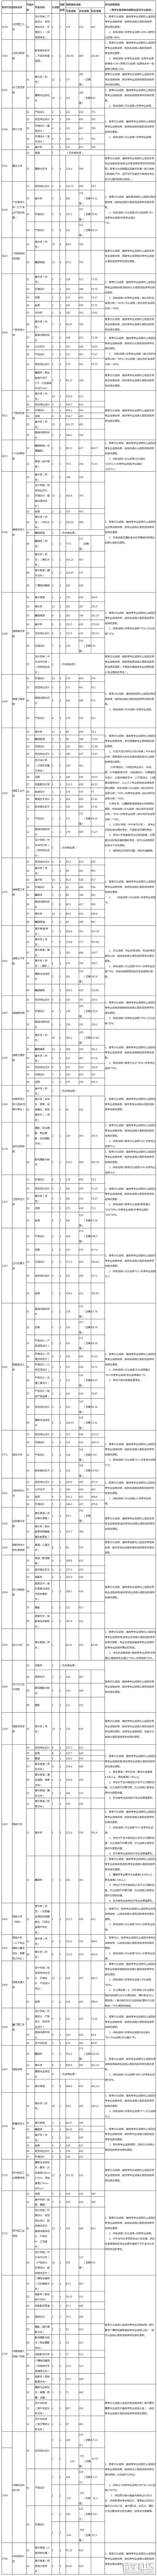 【贵州高考分数线2018】贵州2018艺术类梯度志愿本科院校录取分数线(7月18日)